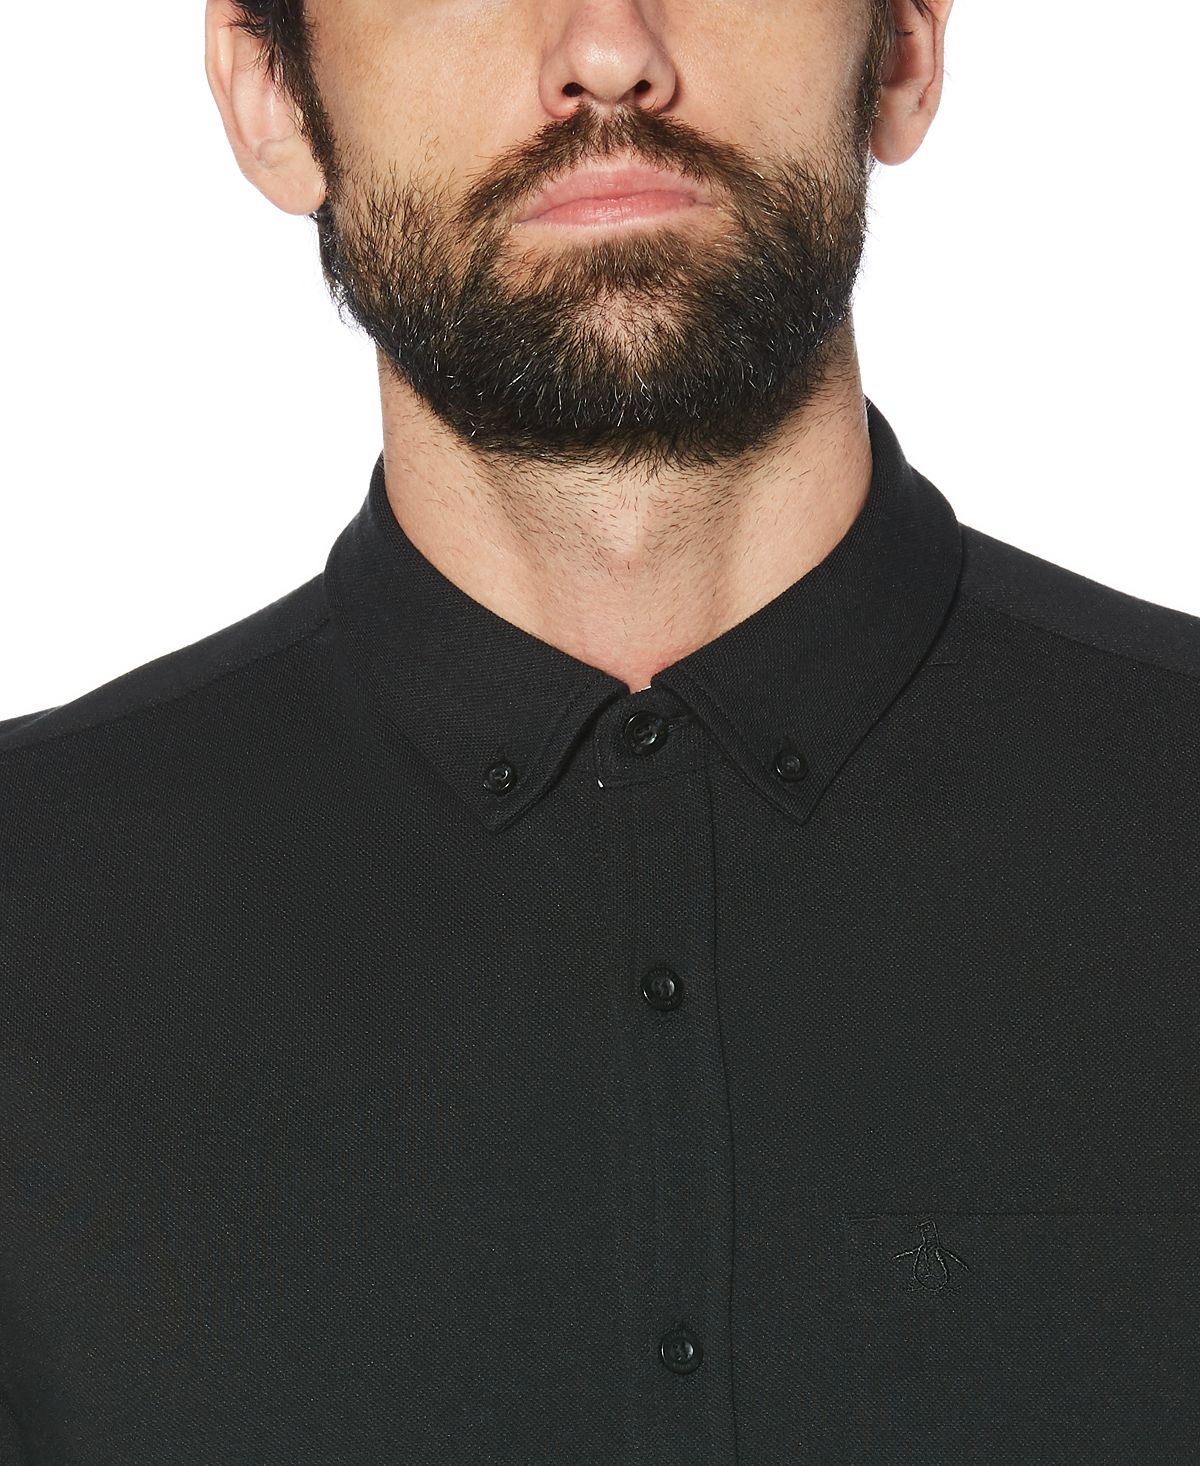 Original Penguin Slim-fit Button-front Shirt True Black